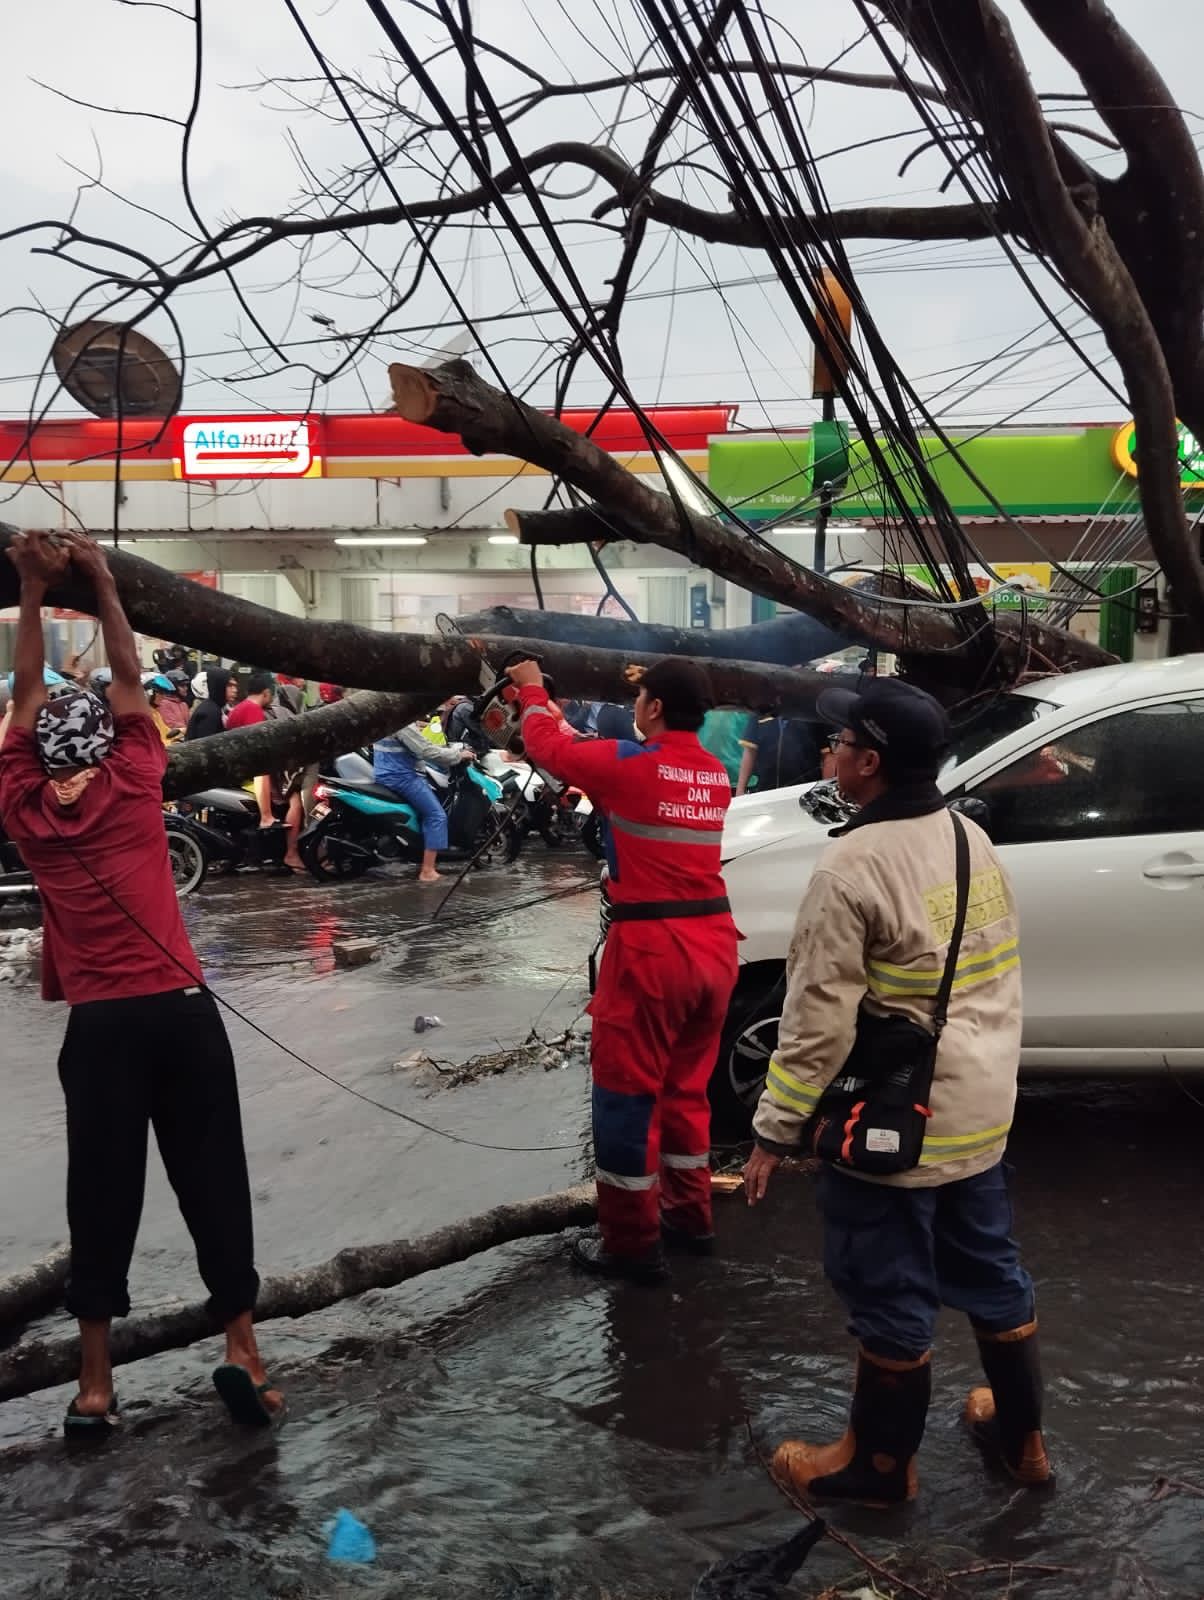 Pohon tiban satu mobil yang sedang melaju di Bandung akibat hujan deras dan angin kencang (14/11).